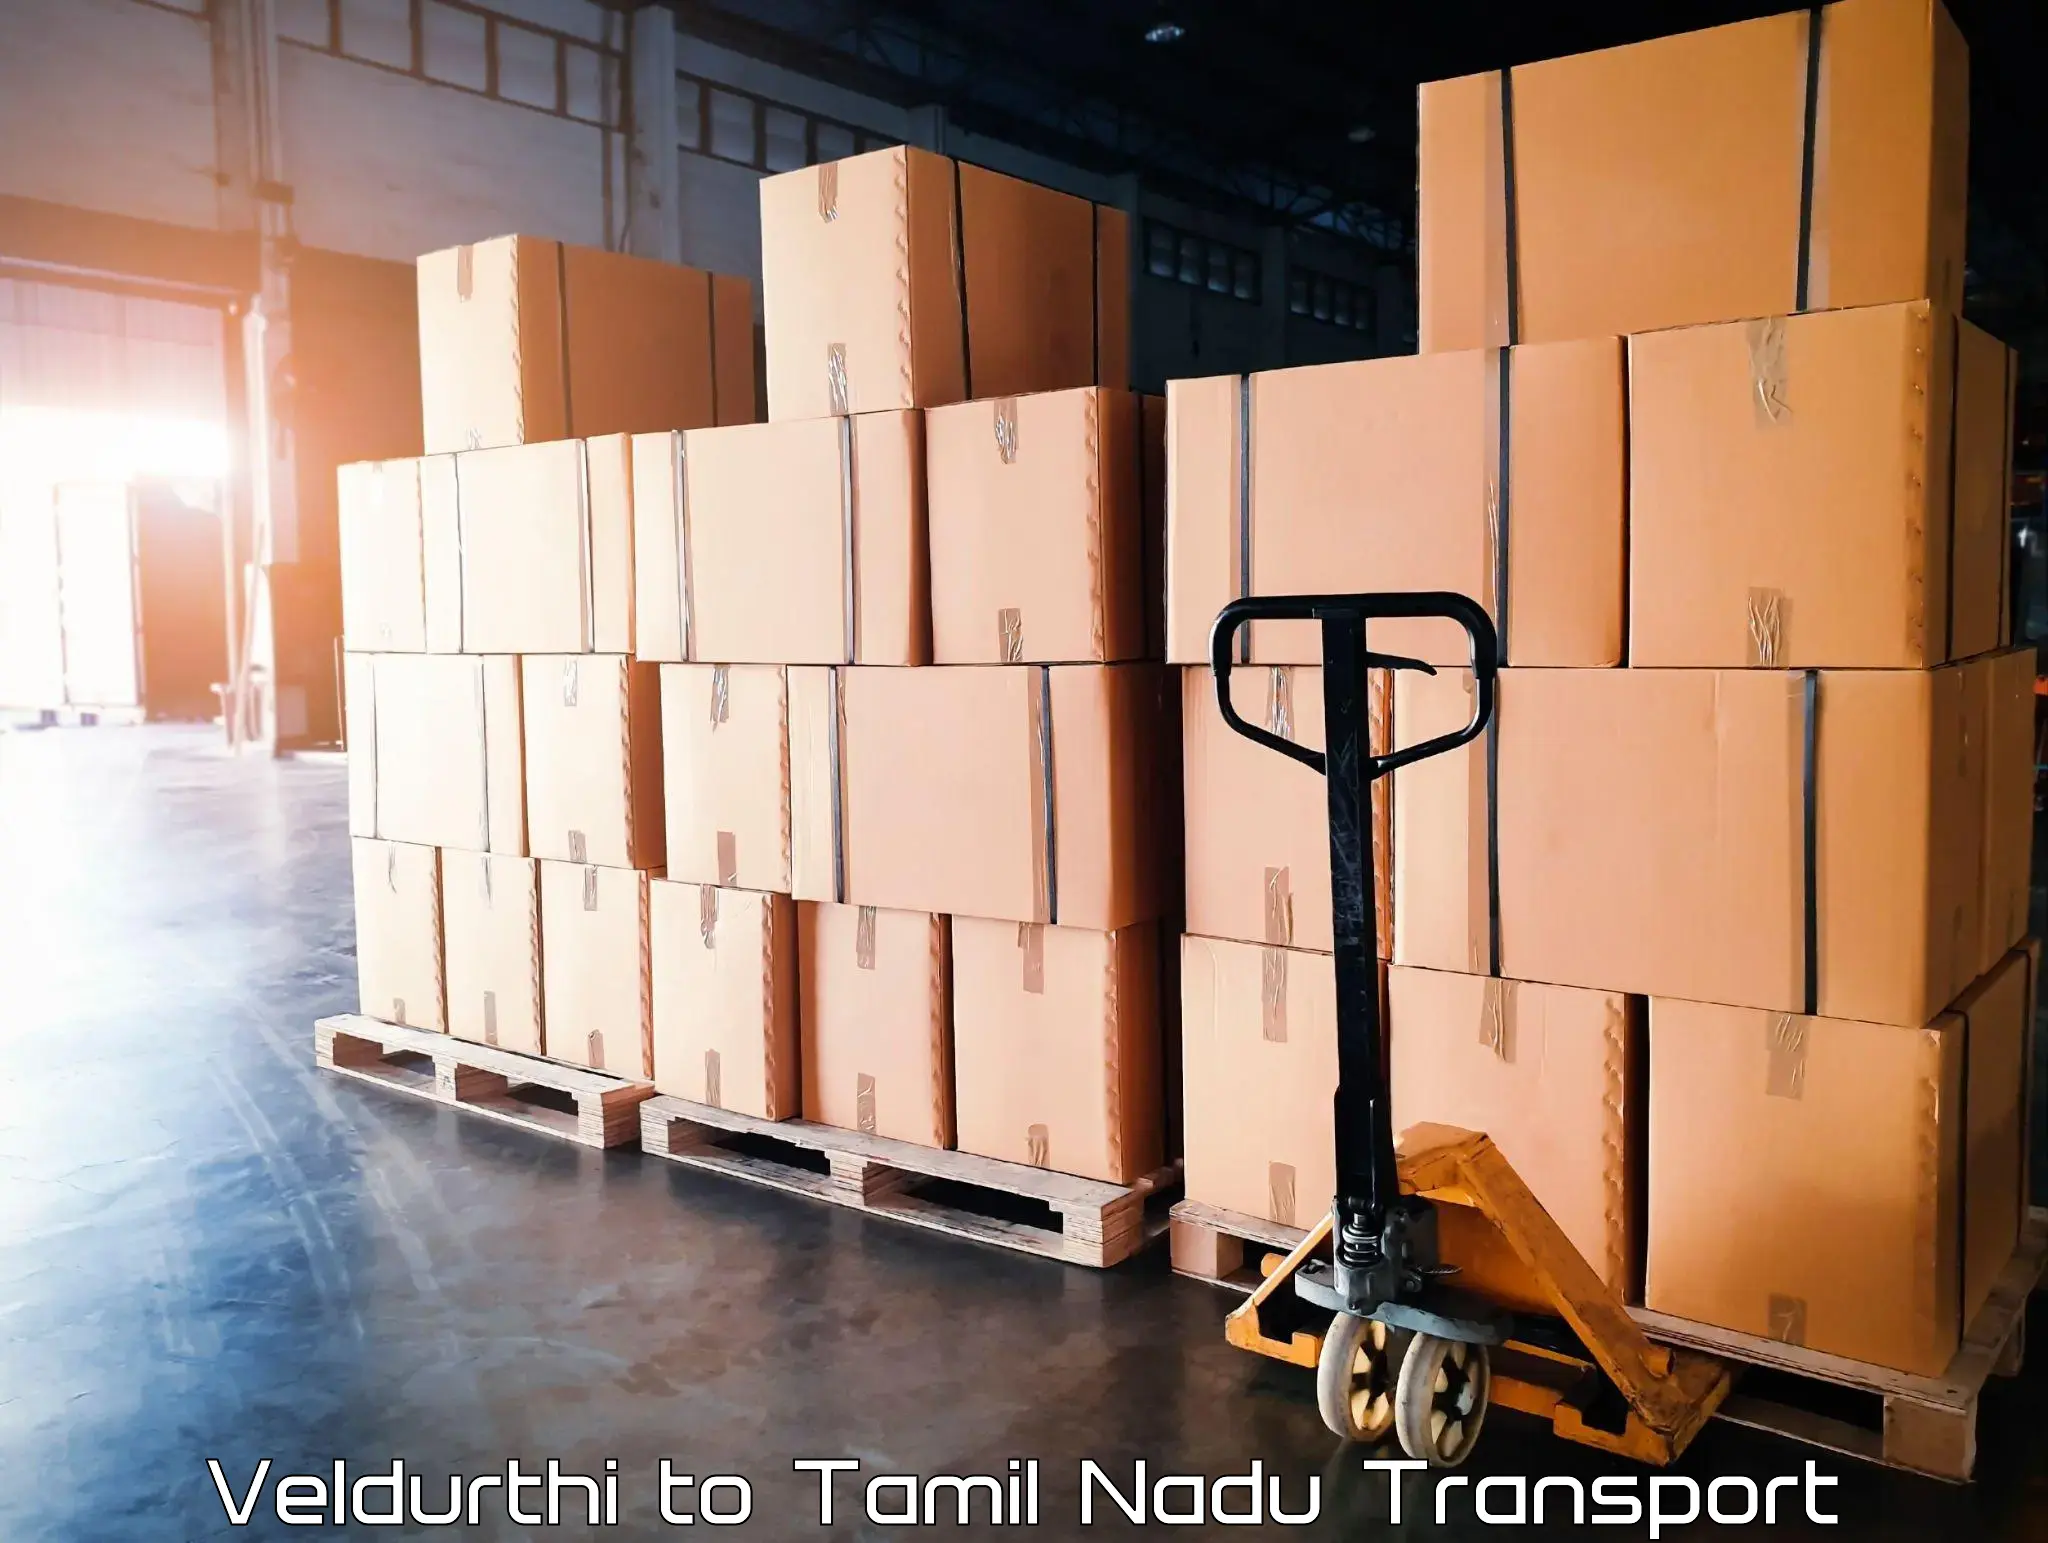 Daily transport service Veldurthi to Avadi